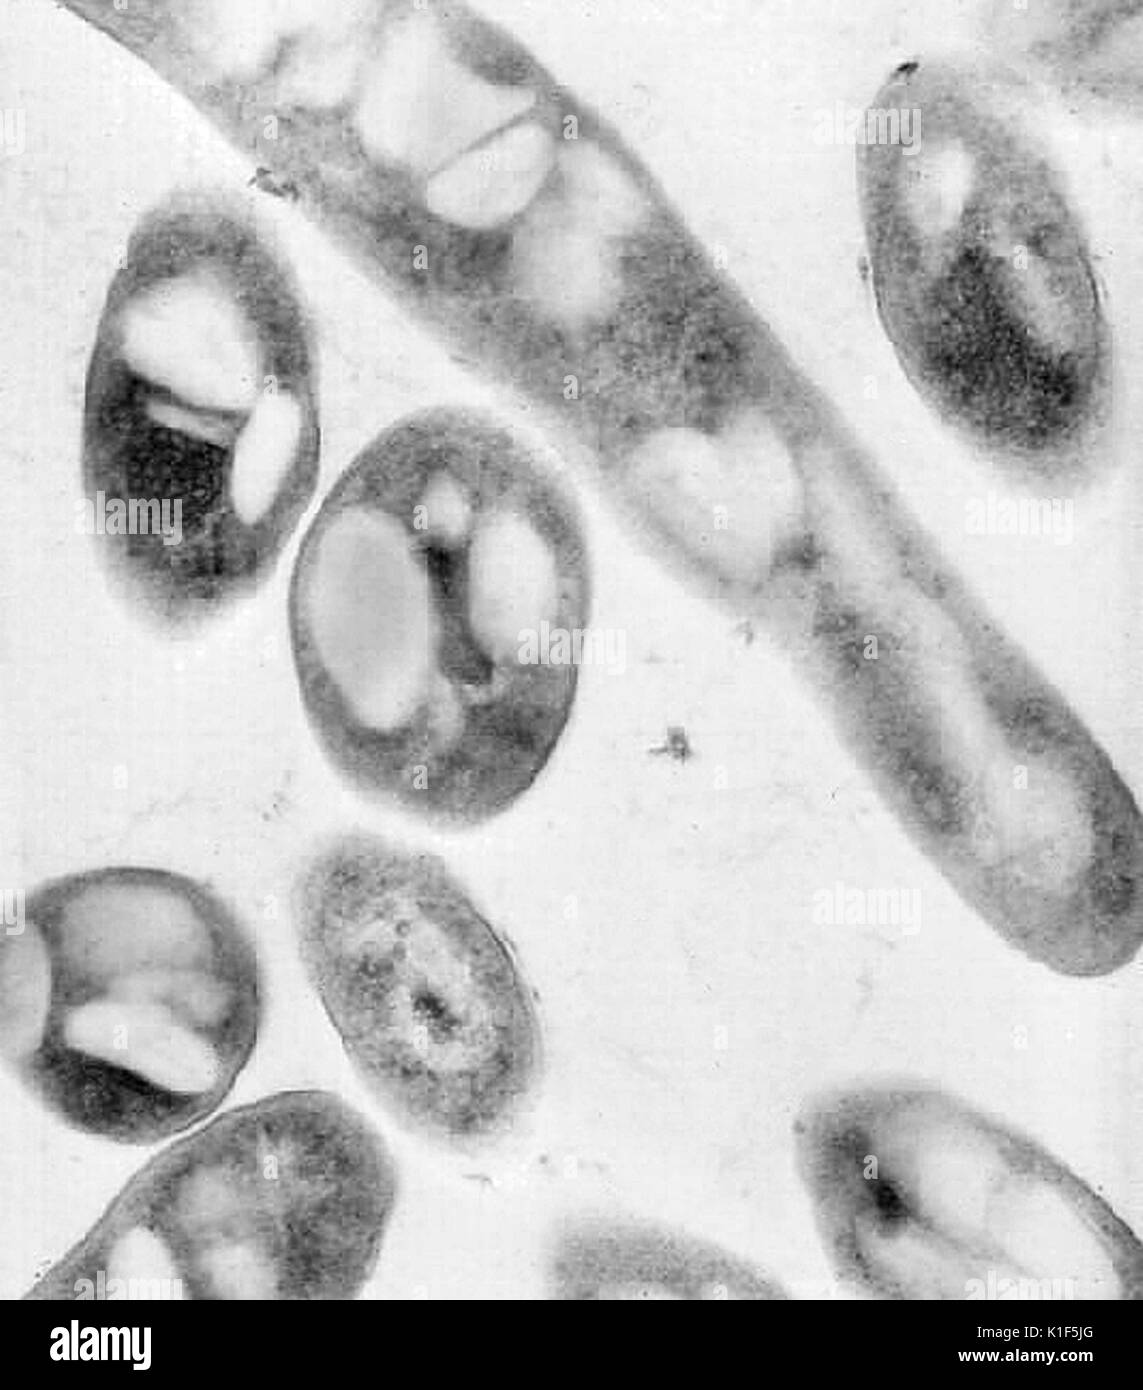 Transmission electron micrographic image of Bacillus anthracis . Image courtesy CDC/Dr. Sherif Zaki, Elizabeth White, 2001. Stock Photo